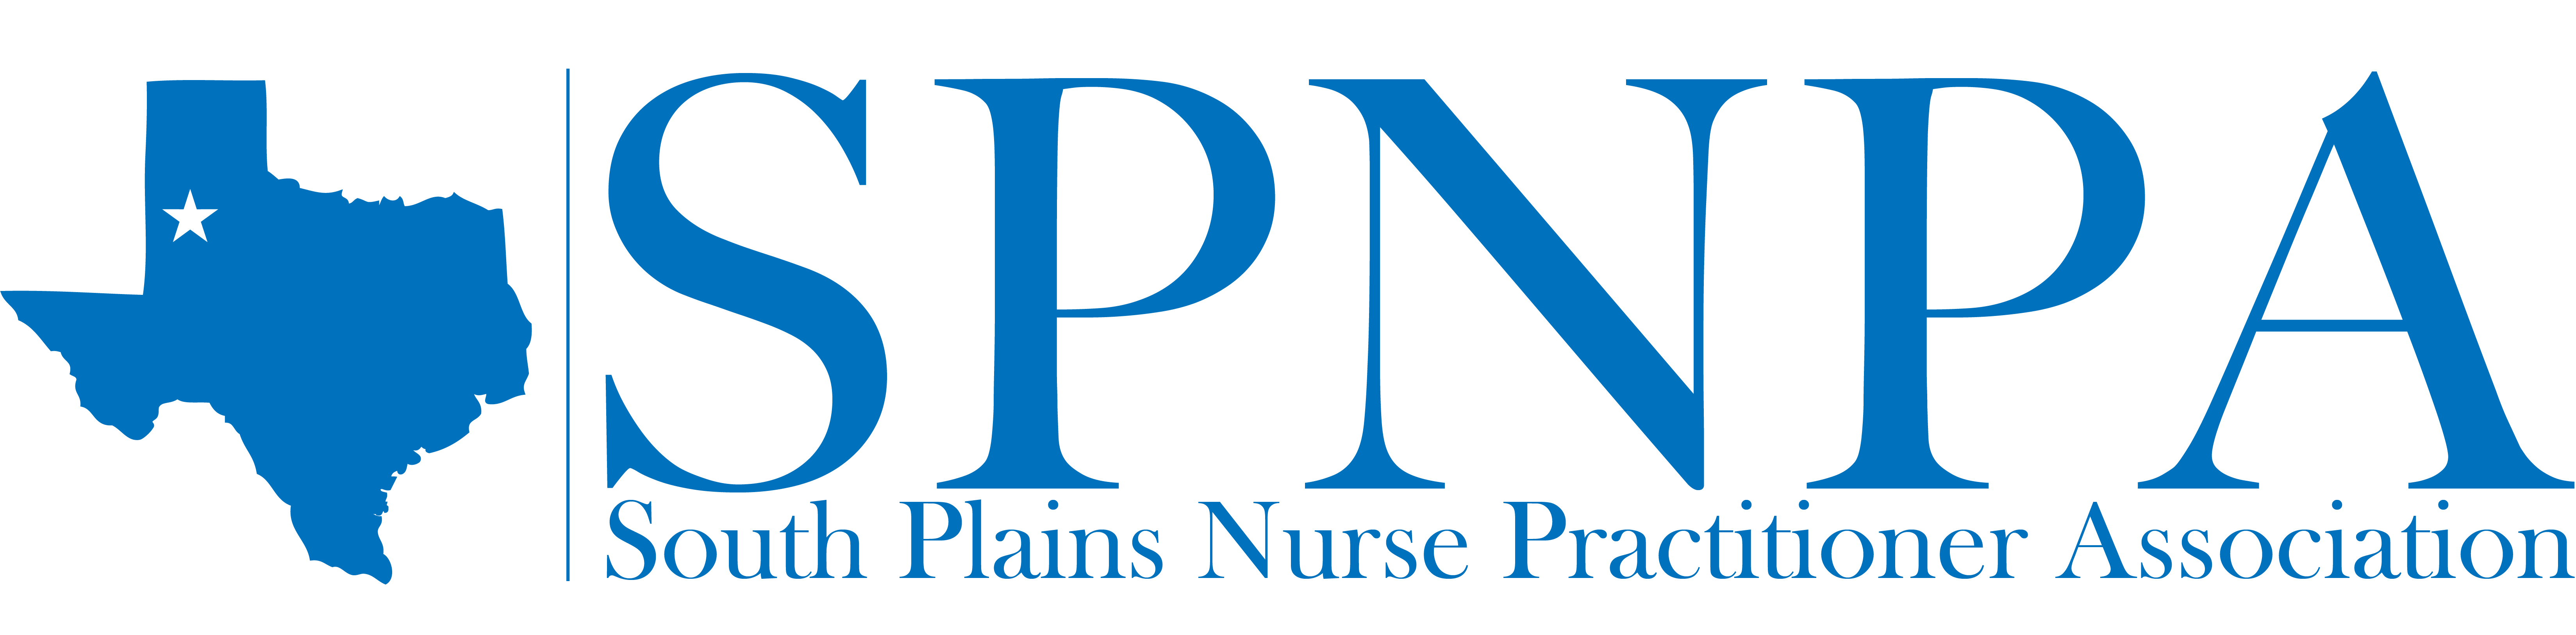 SPNPA logo